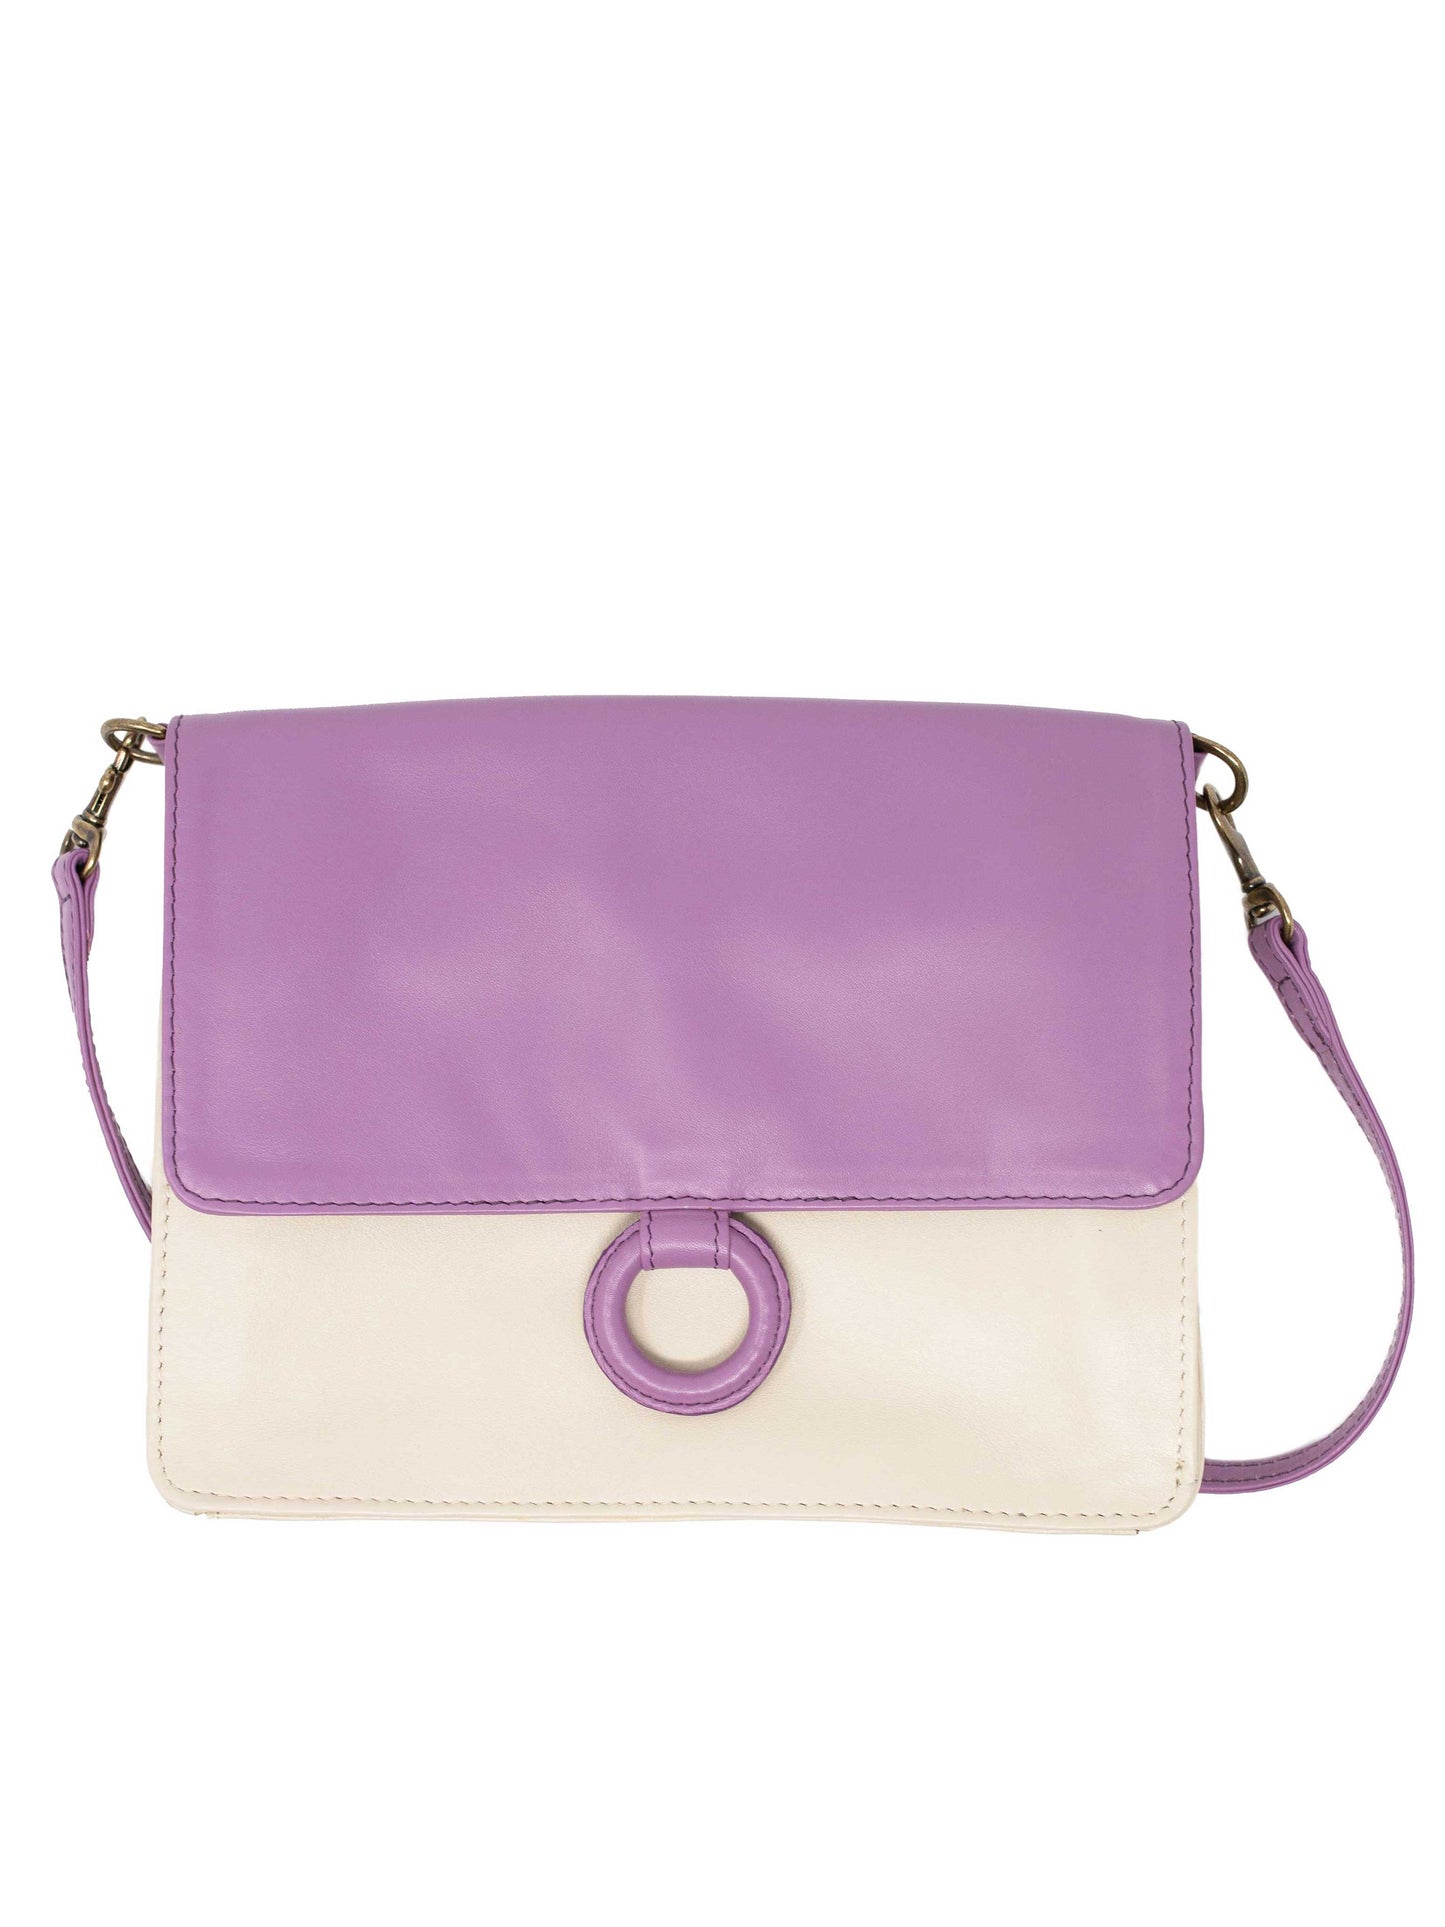 Lavender Leather Crossbody Wallet bag by Payton James Nashville Handbag designer